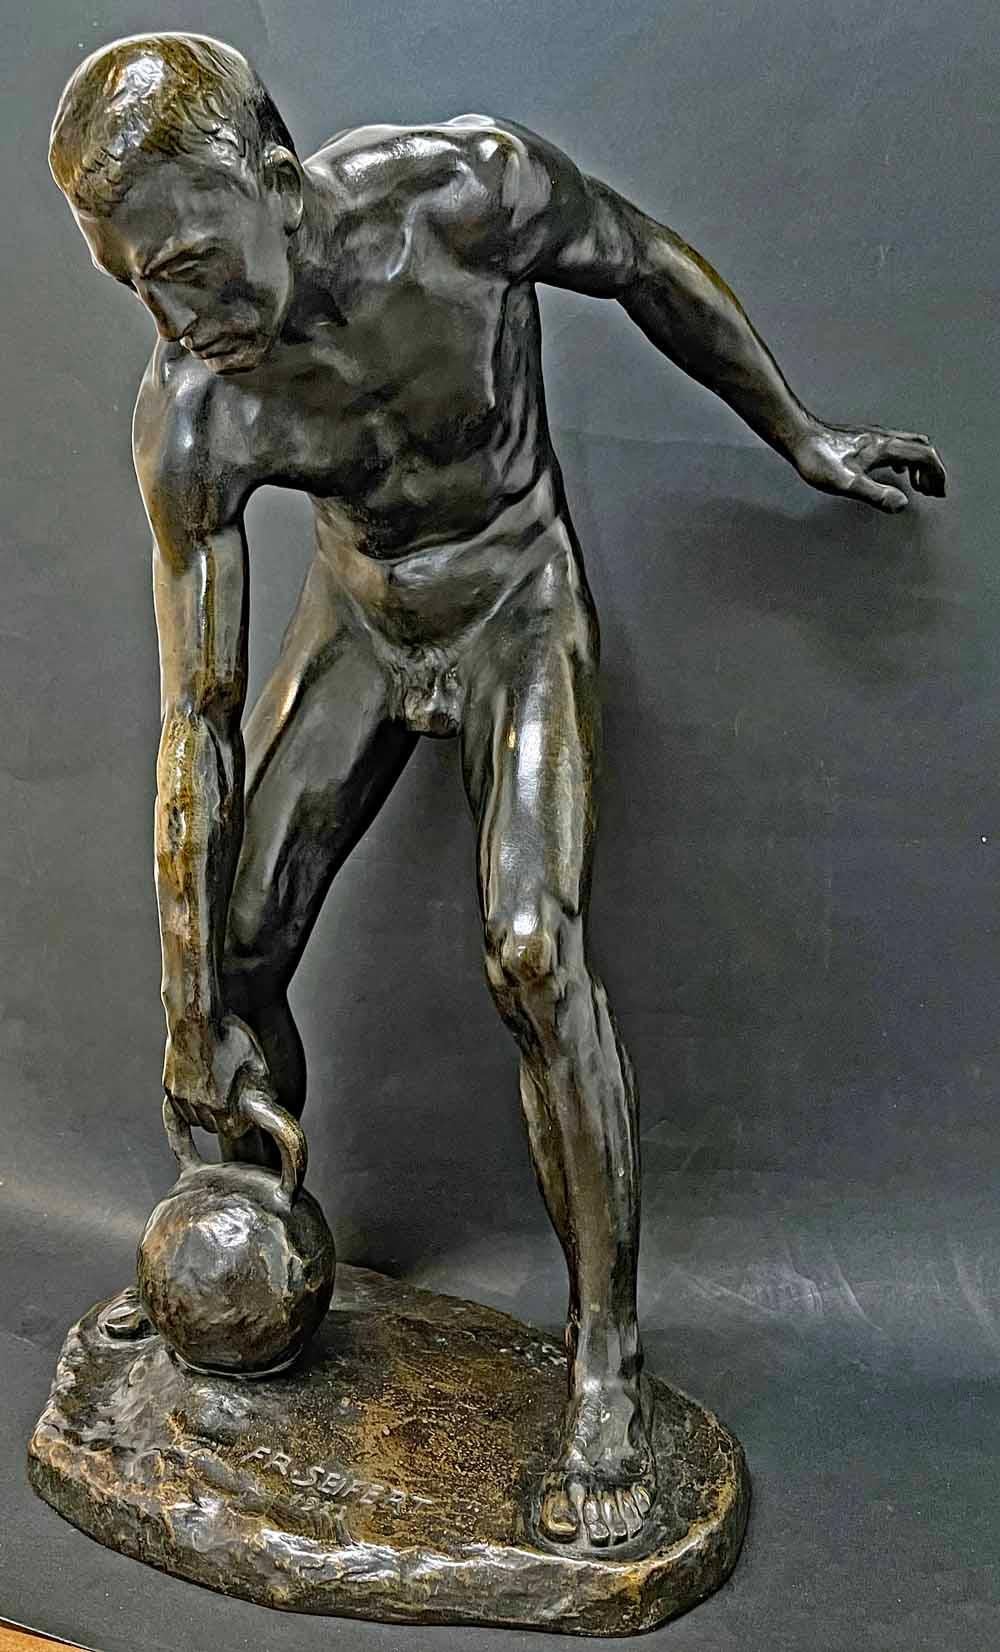 Diese sehr seltene Bronze eines nackten männlichen Athleten, der sich darauf vorbereitet, ein schweres Kettlebell-Gewicht zu verlassen, wurde 1922 von dem österreichischen Künstler Franz Seifert angefertigt.  Obwohl Seifert für seine nackten Figuren